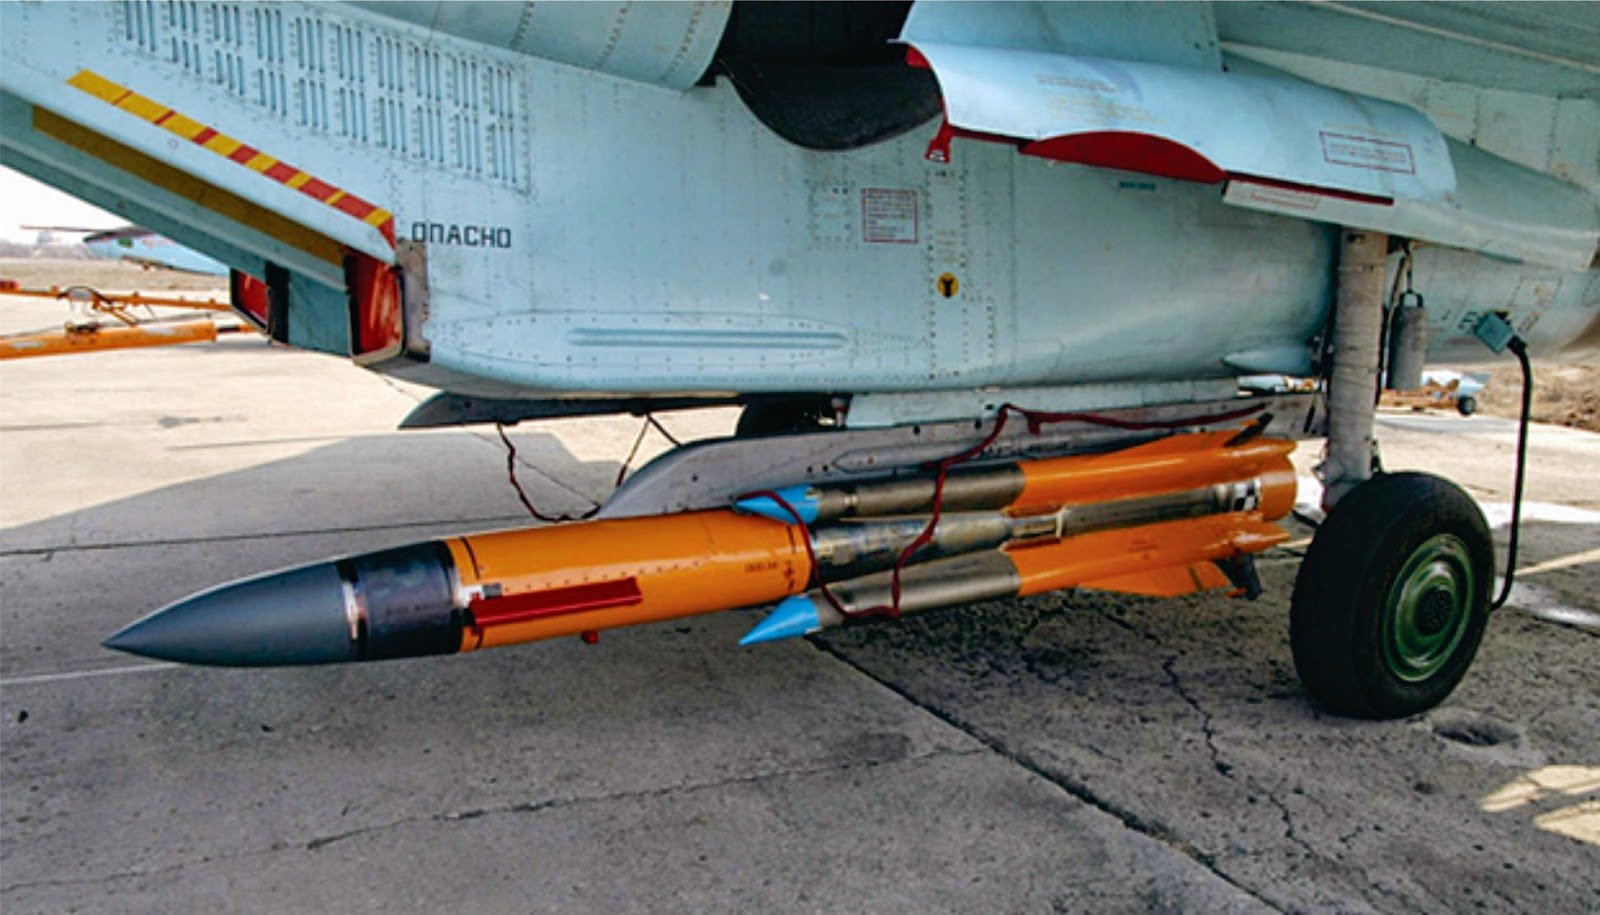 X69 ракета крылатая. Ракета х-31пд. Противорадиолокационная ракета х-31п. Су-34 х-31п. X-31 ракета противорадиолокационная.